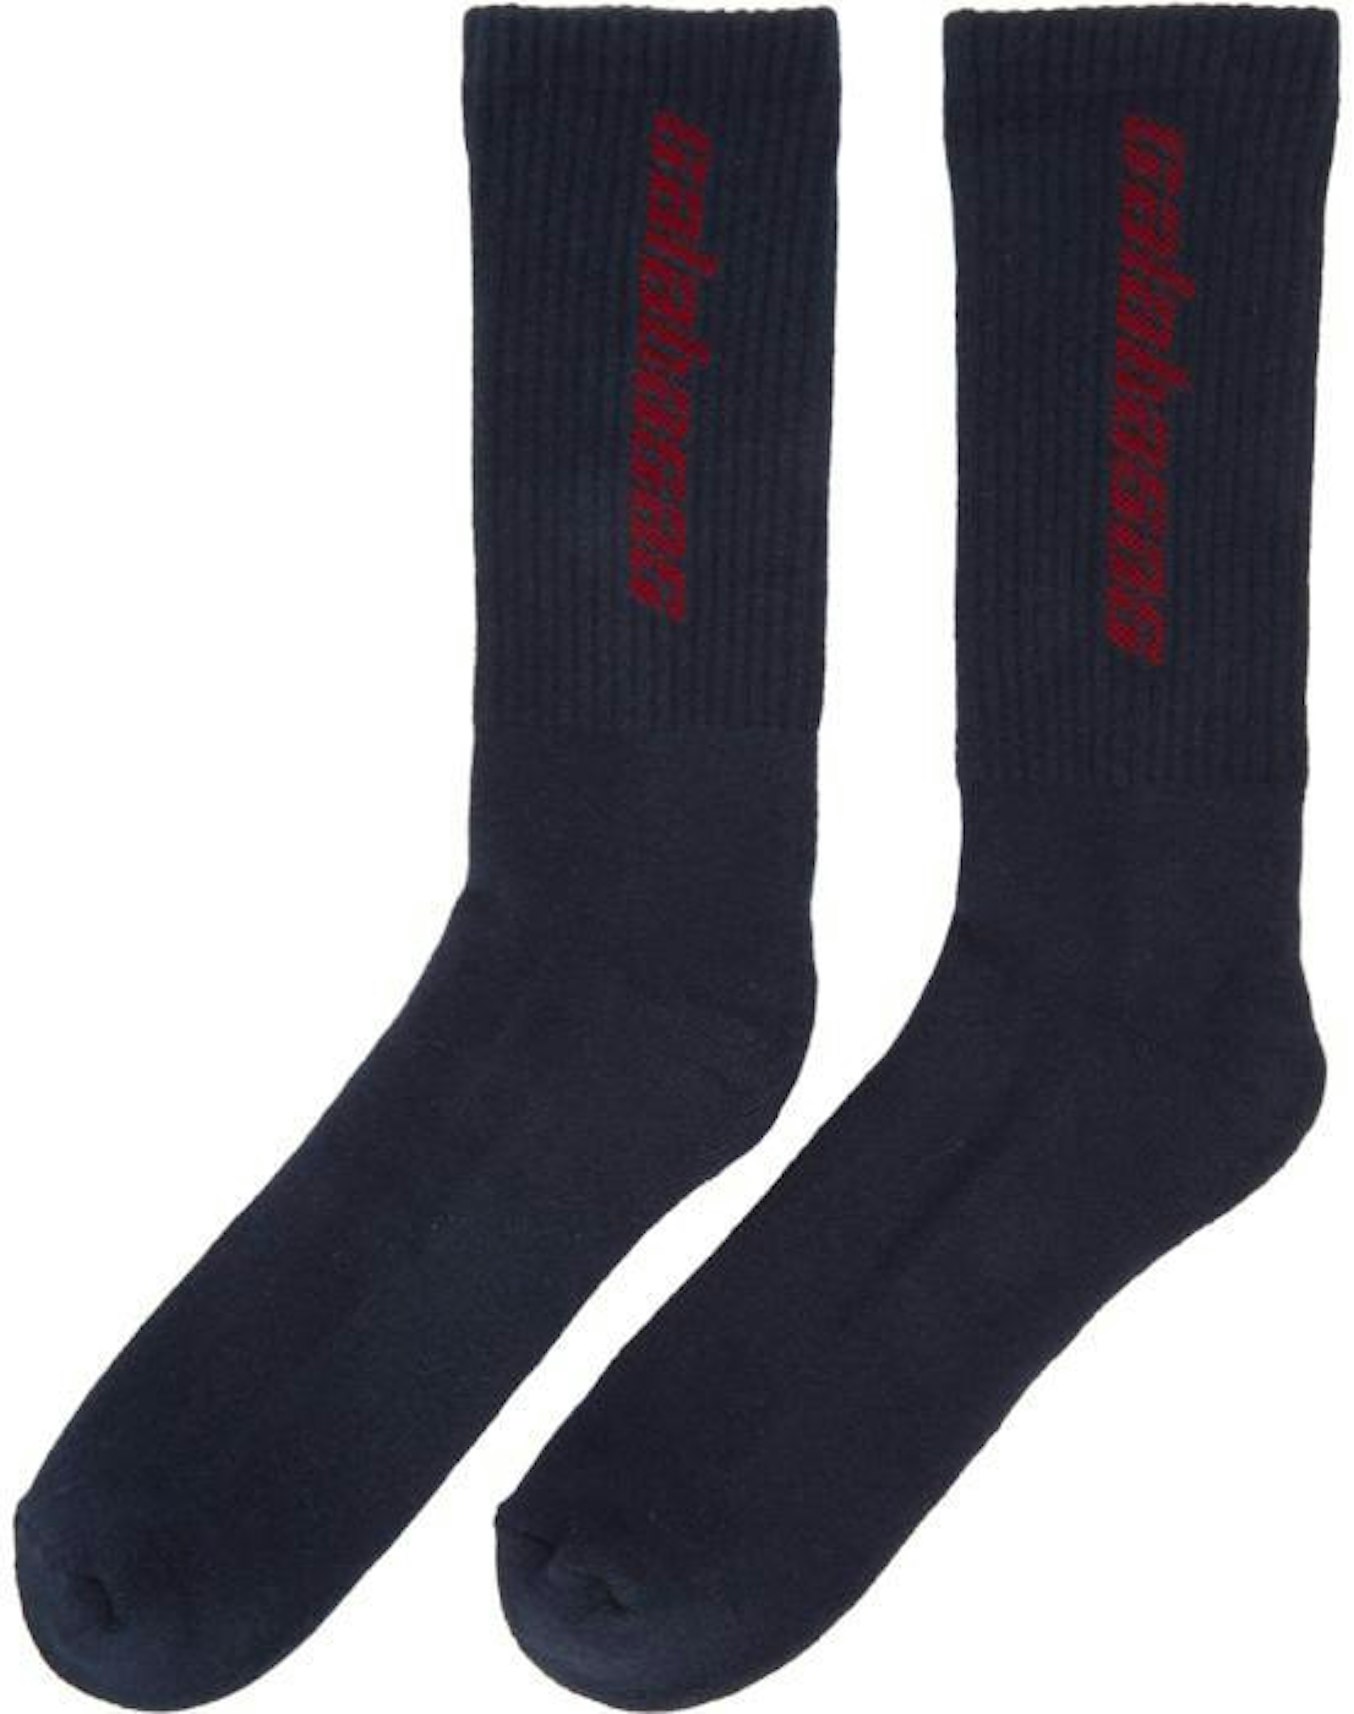 Yeezy Calabasas Socks Luna - SS17 Men's - US